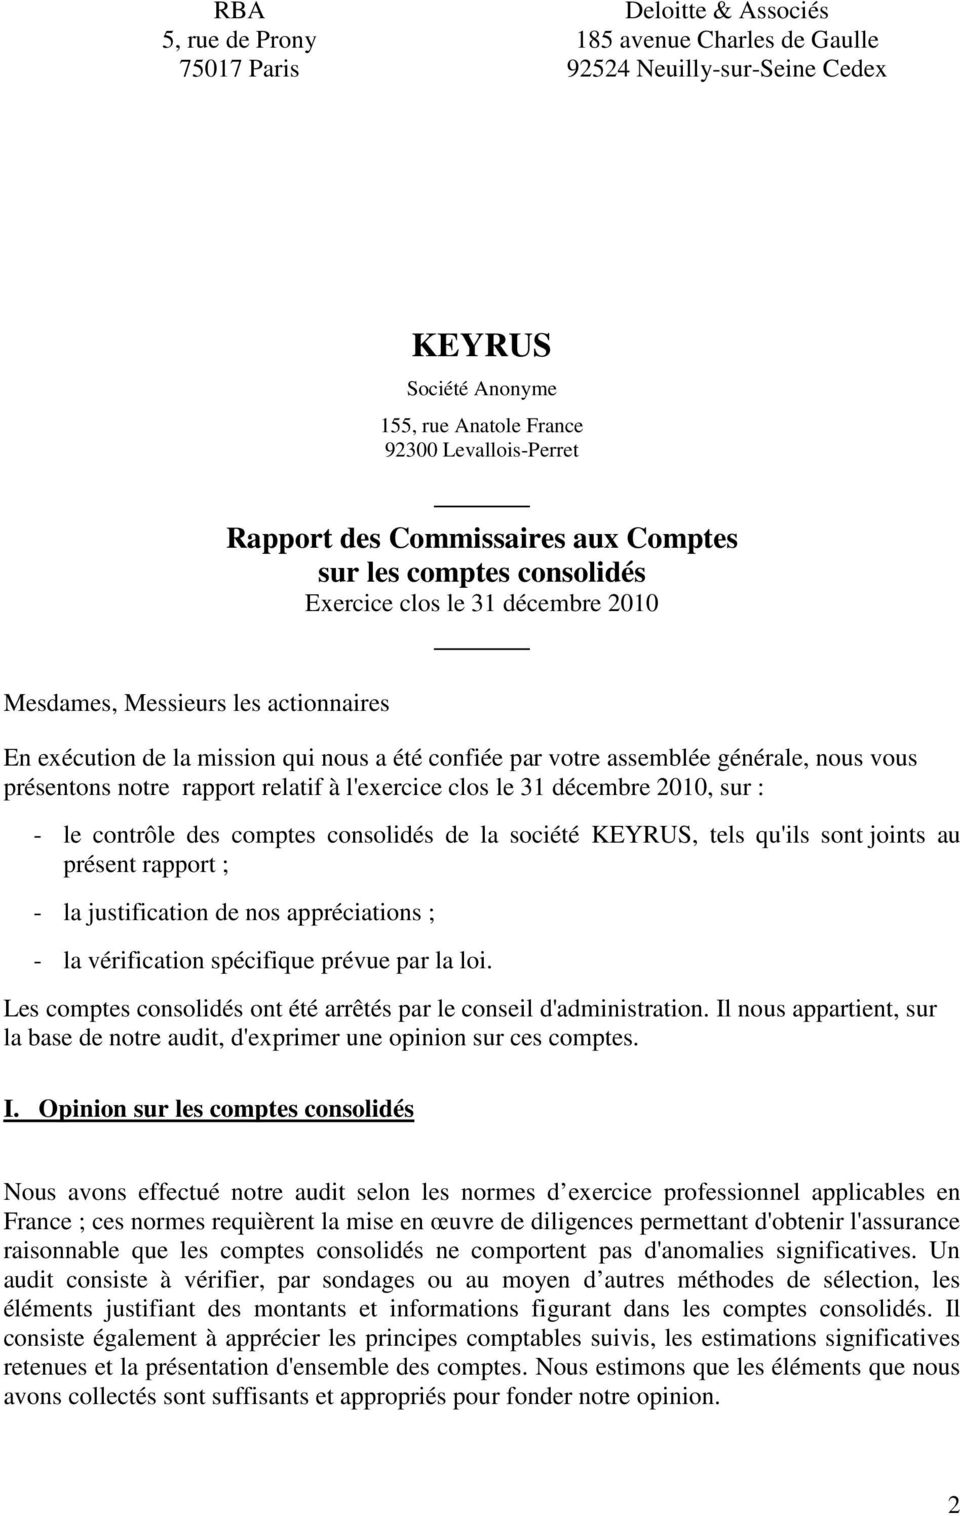 générale, nous vous présentons notre rapport relatif à l'exercice clos le 31 décembre 2010, sur : - le contrôle des comptes consolidés de la société KEYRUS, tels qu'ils sont joints au présent rapport